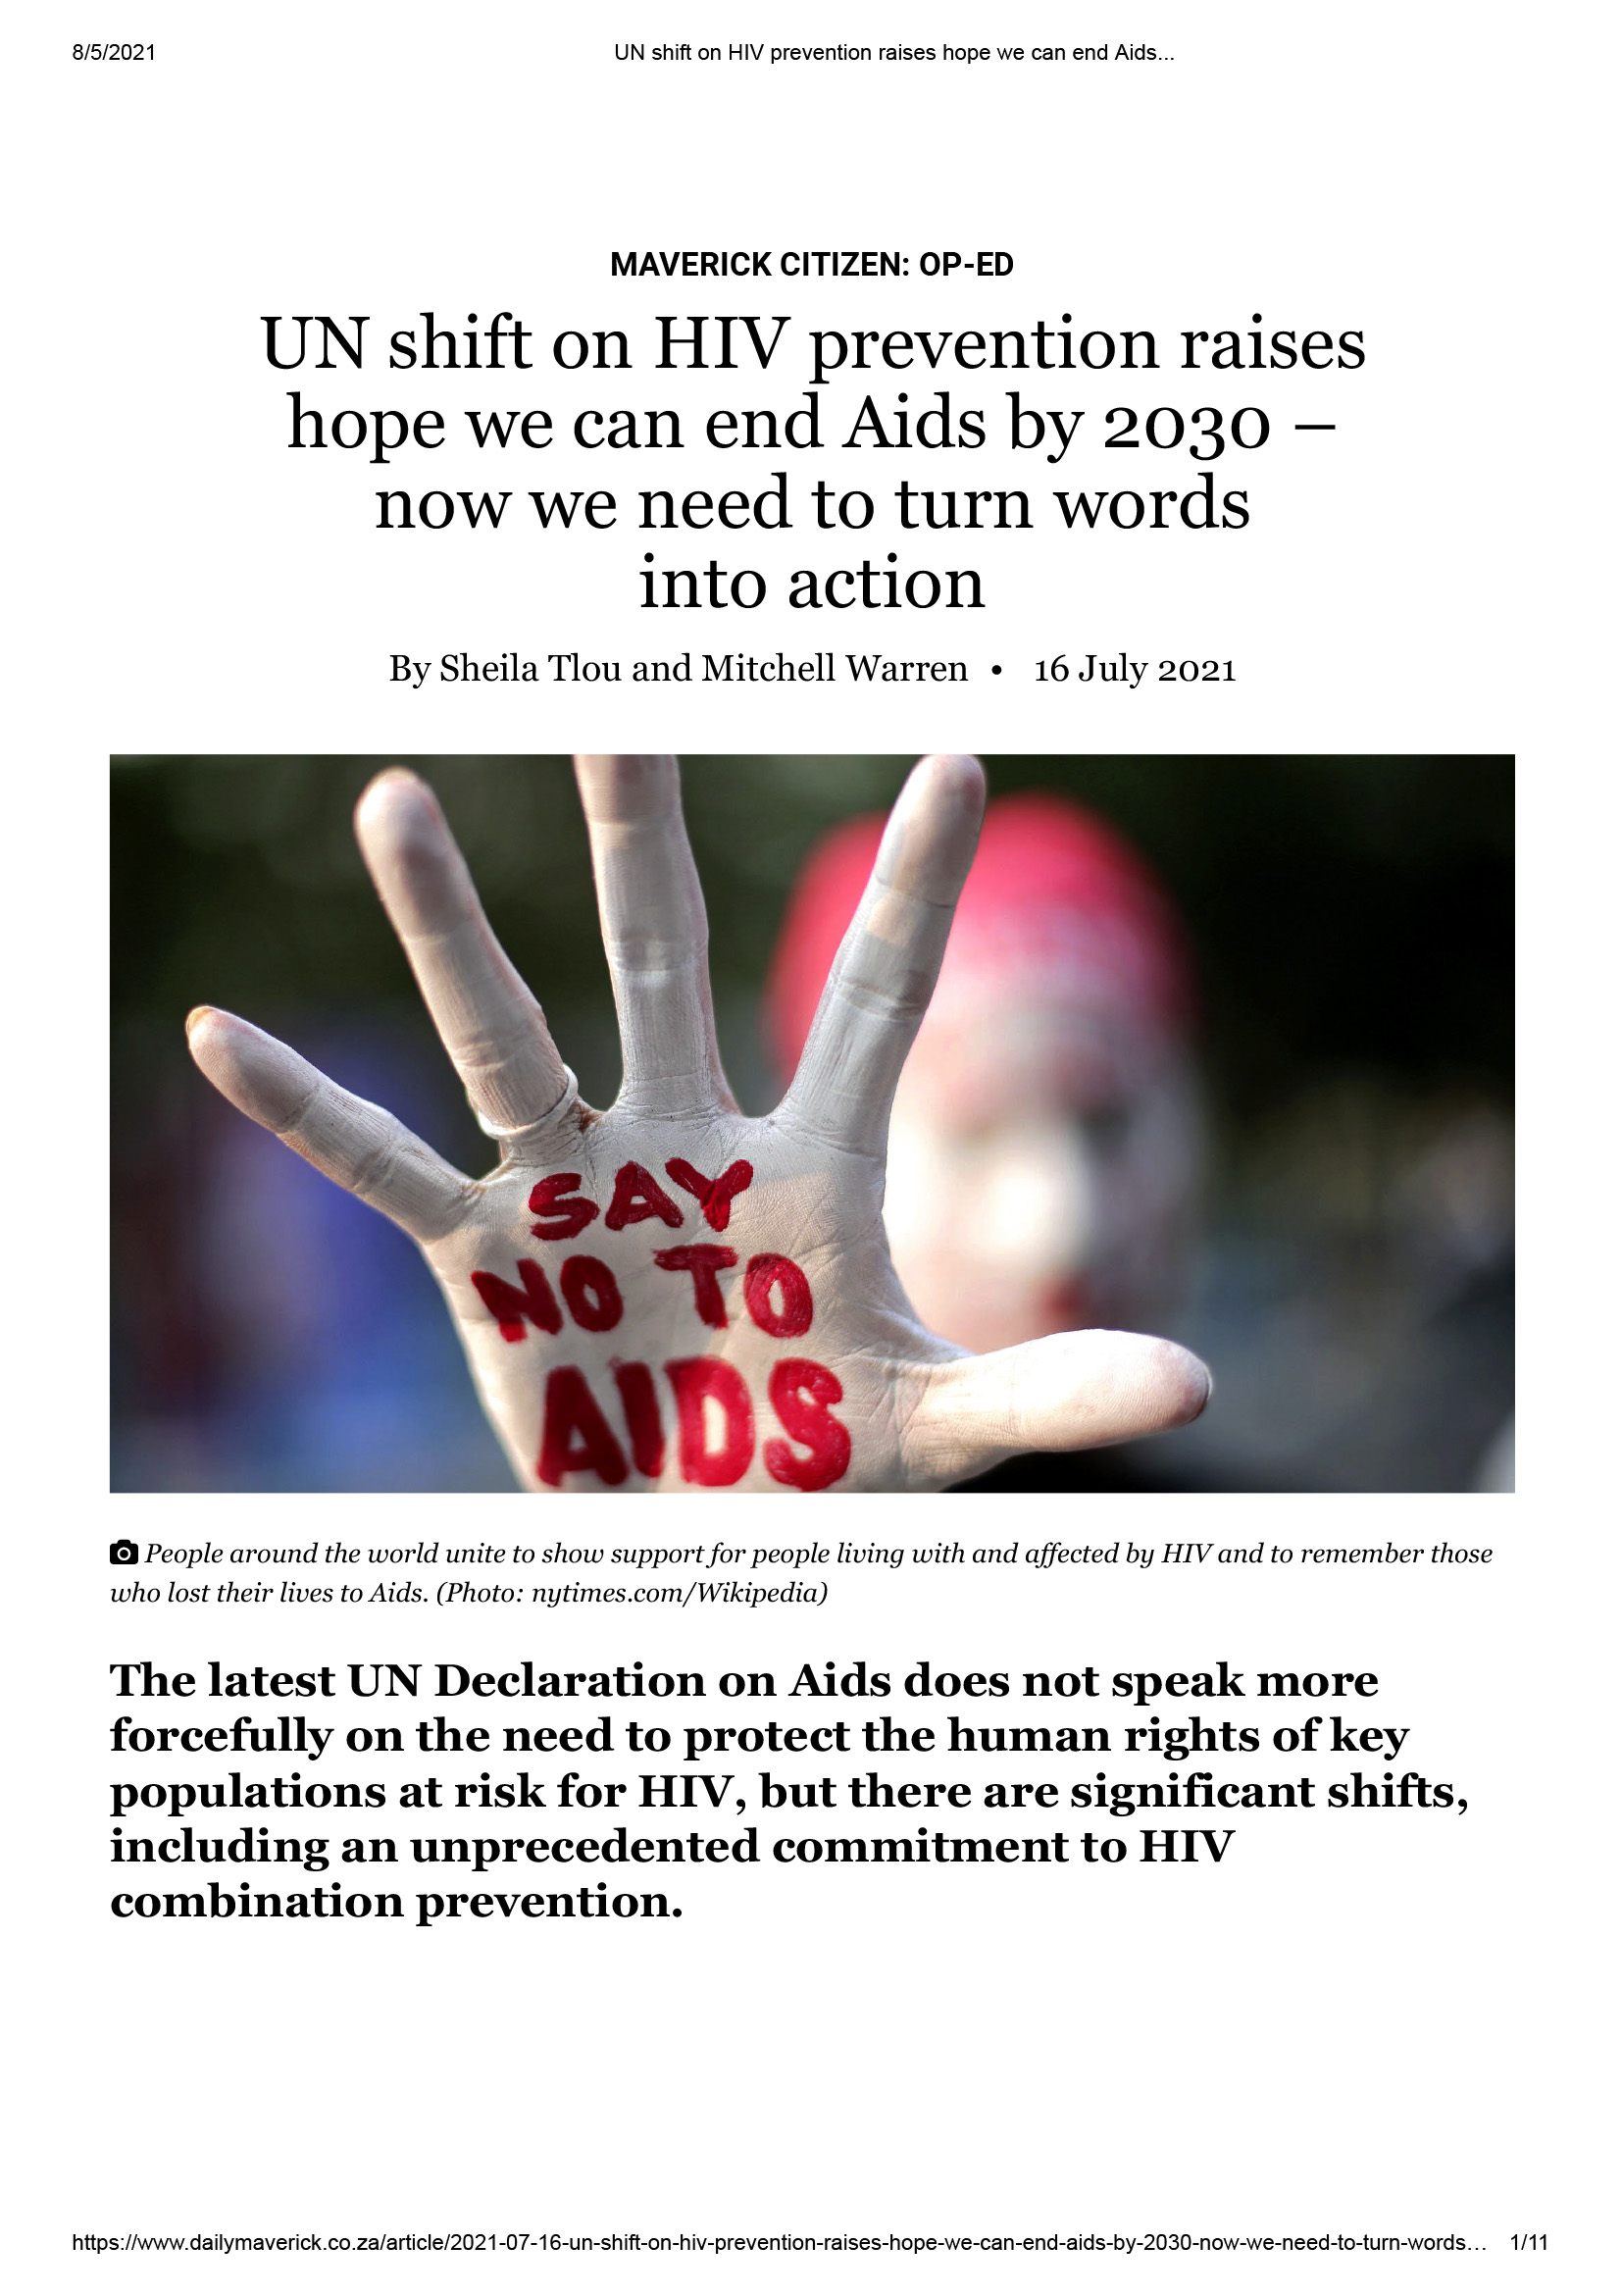 El giro de la ONU en la prevención del VIH hace albergar esperanzas de que podamos acabar con el sida para 2030